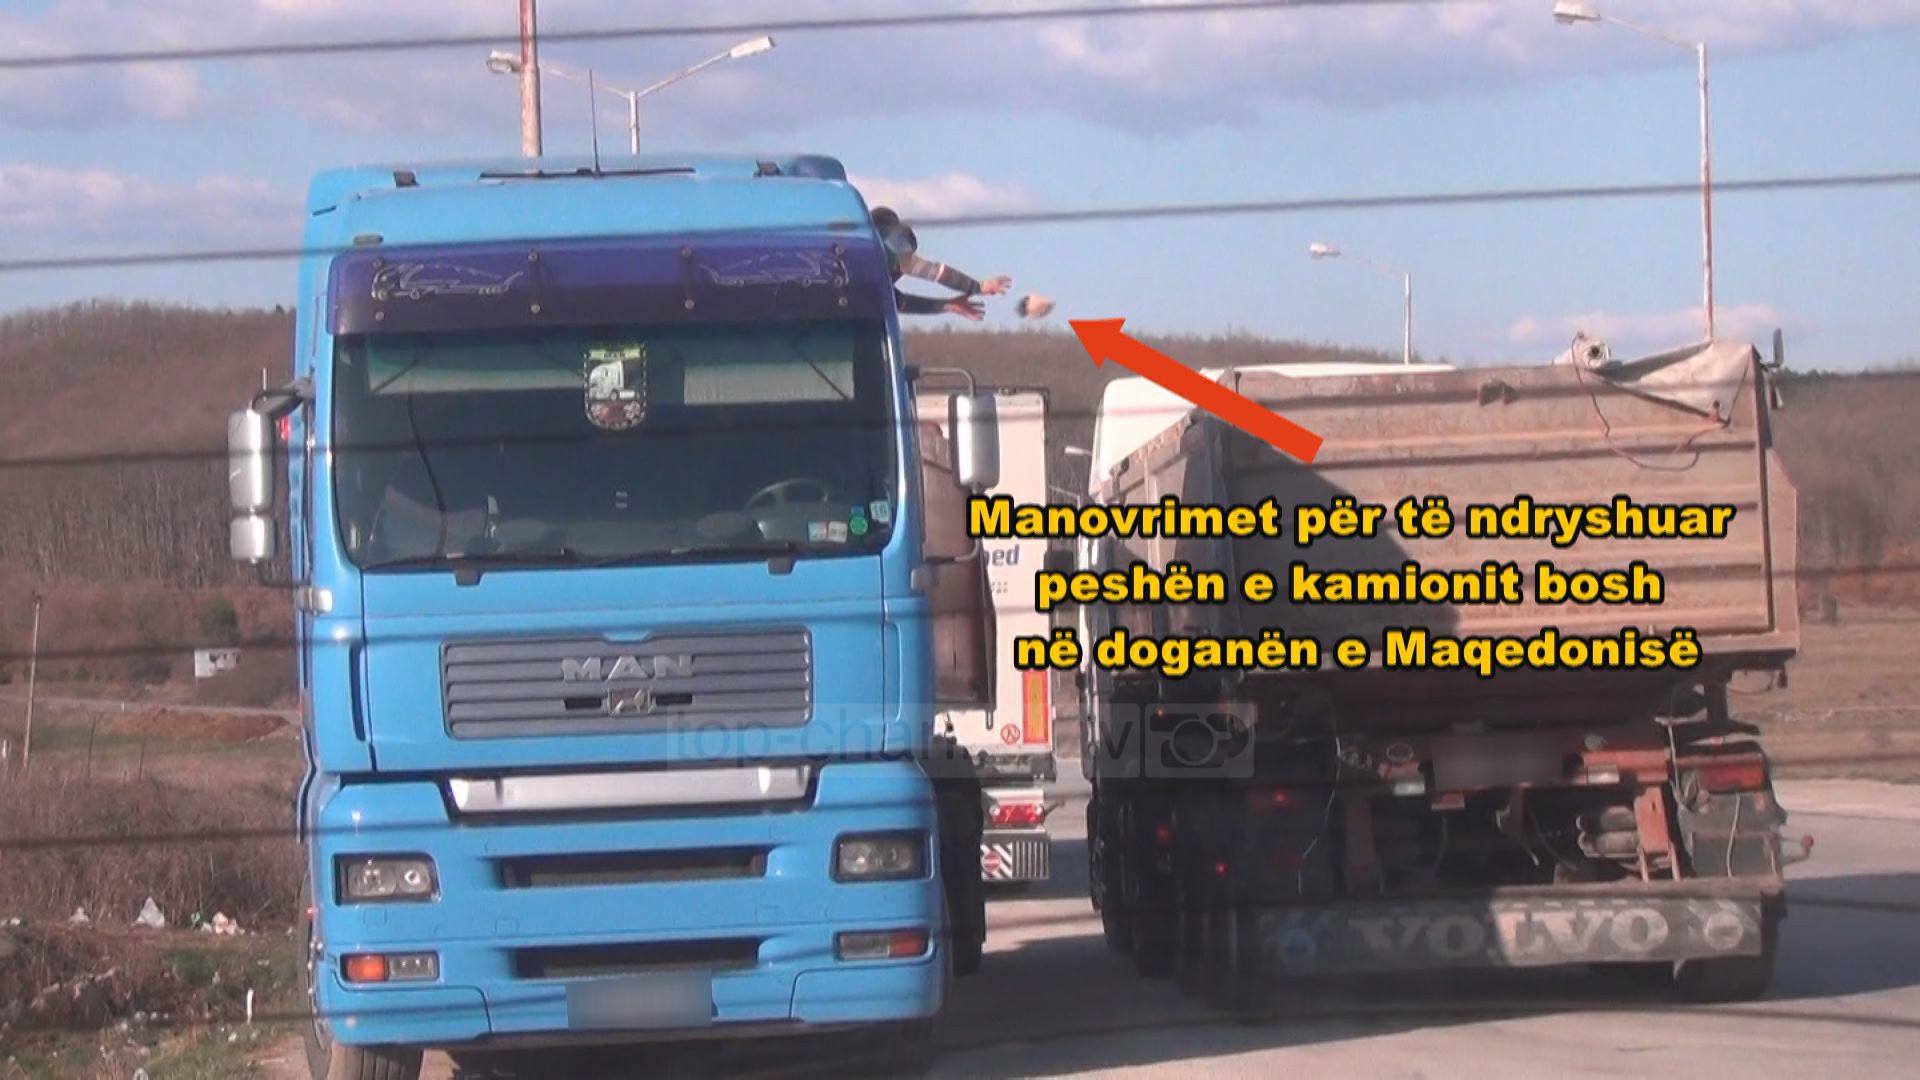 Si kalohet nafta kontrabandë nga Maqedonia në Shqipëri